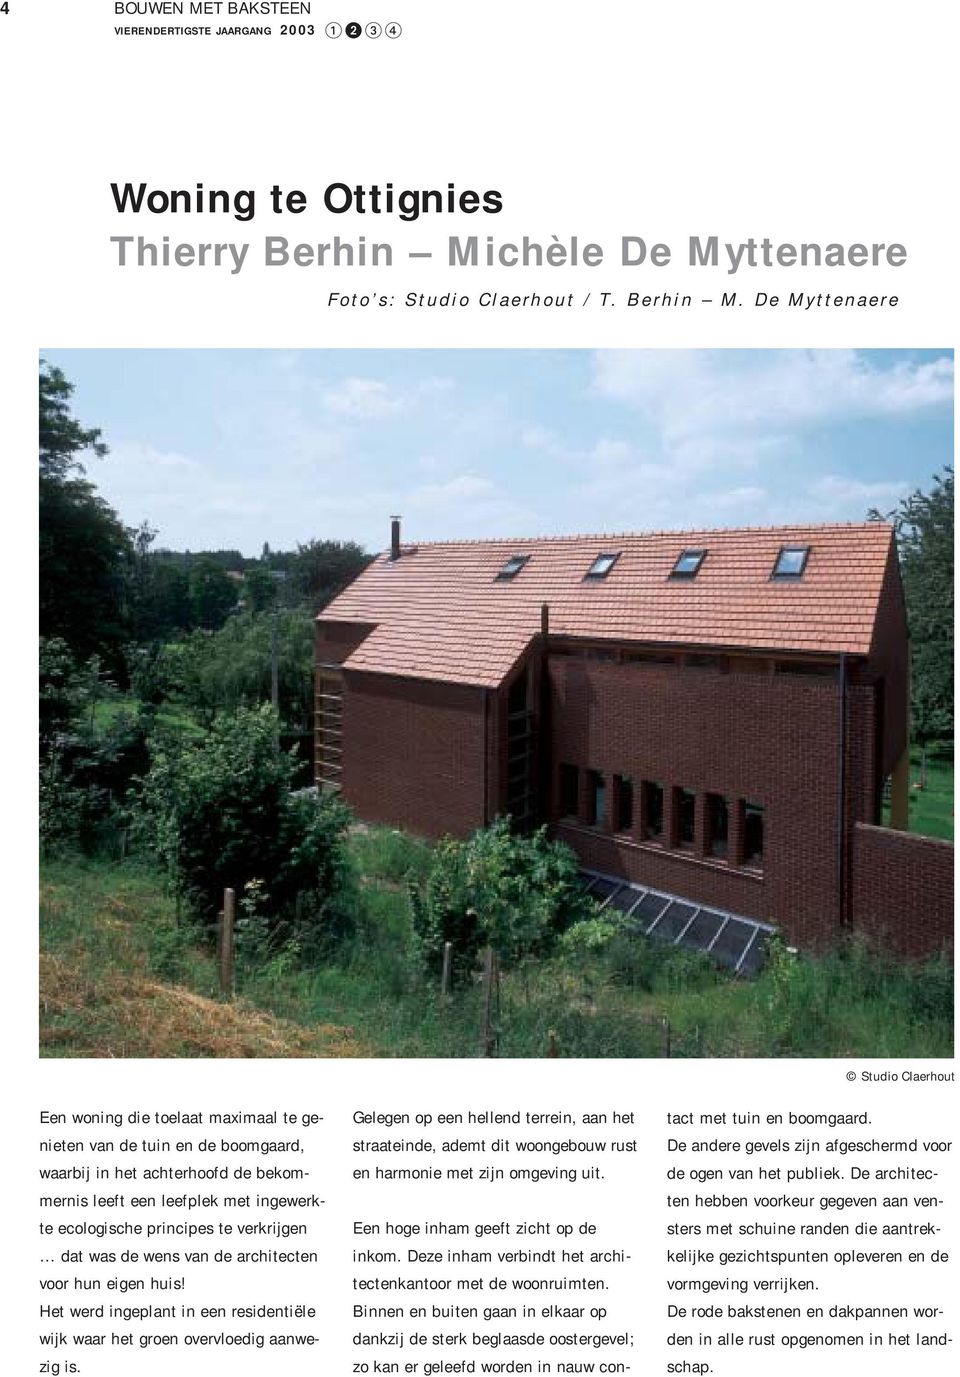 De Myttenaere Studio Claerhout Een woning die toelaat maximaal te genieten van de tuin en de boomgaard, waarbij in het achterhoofd de bekommernis leeft een leefplek met ingewerkte ecologische